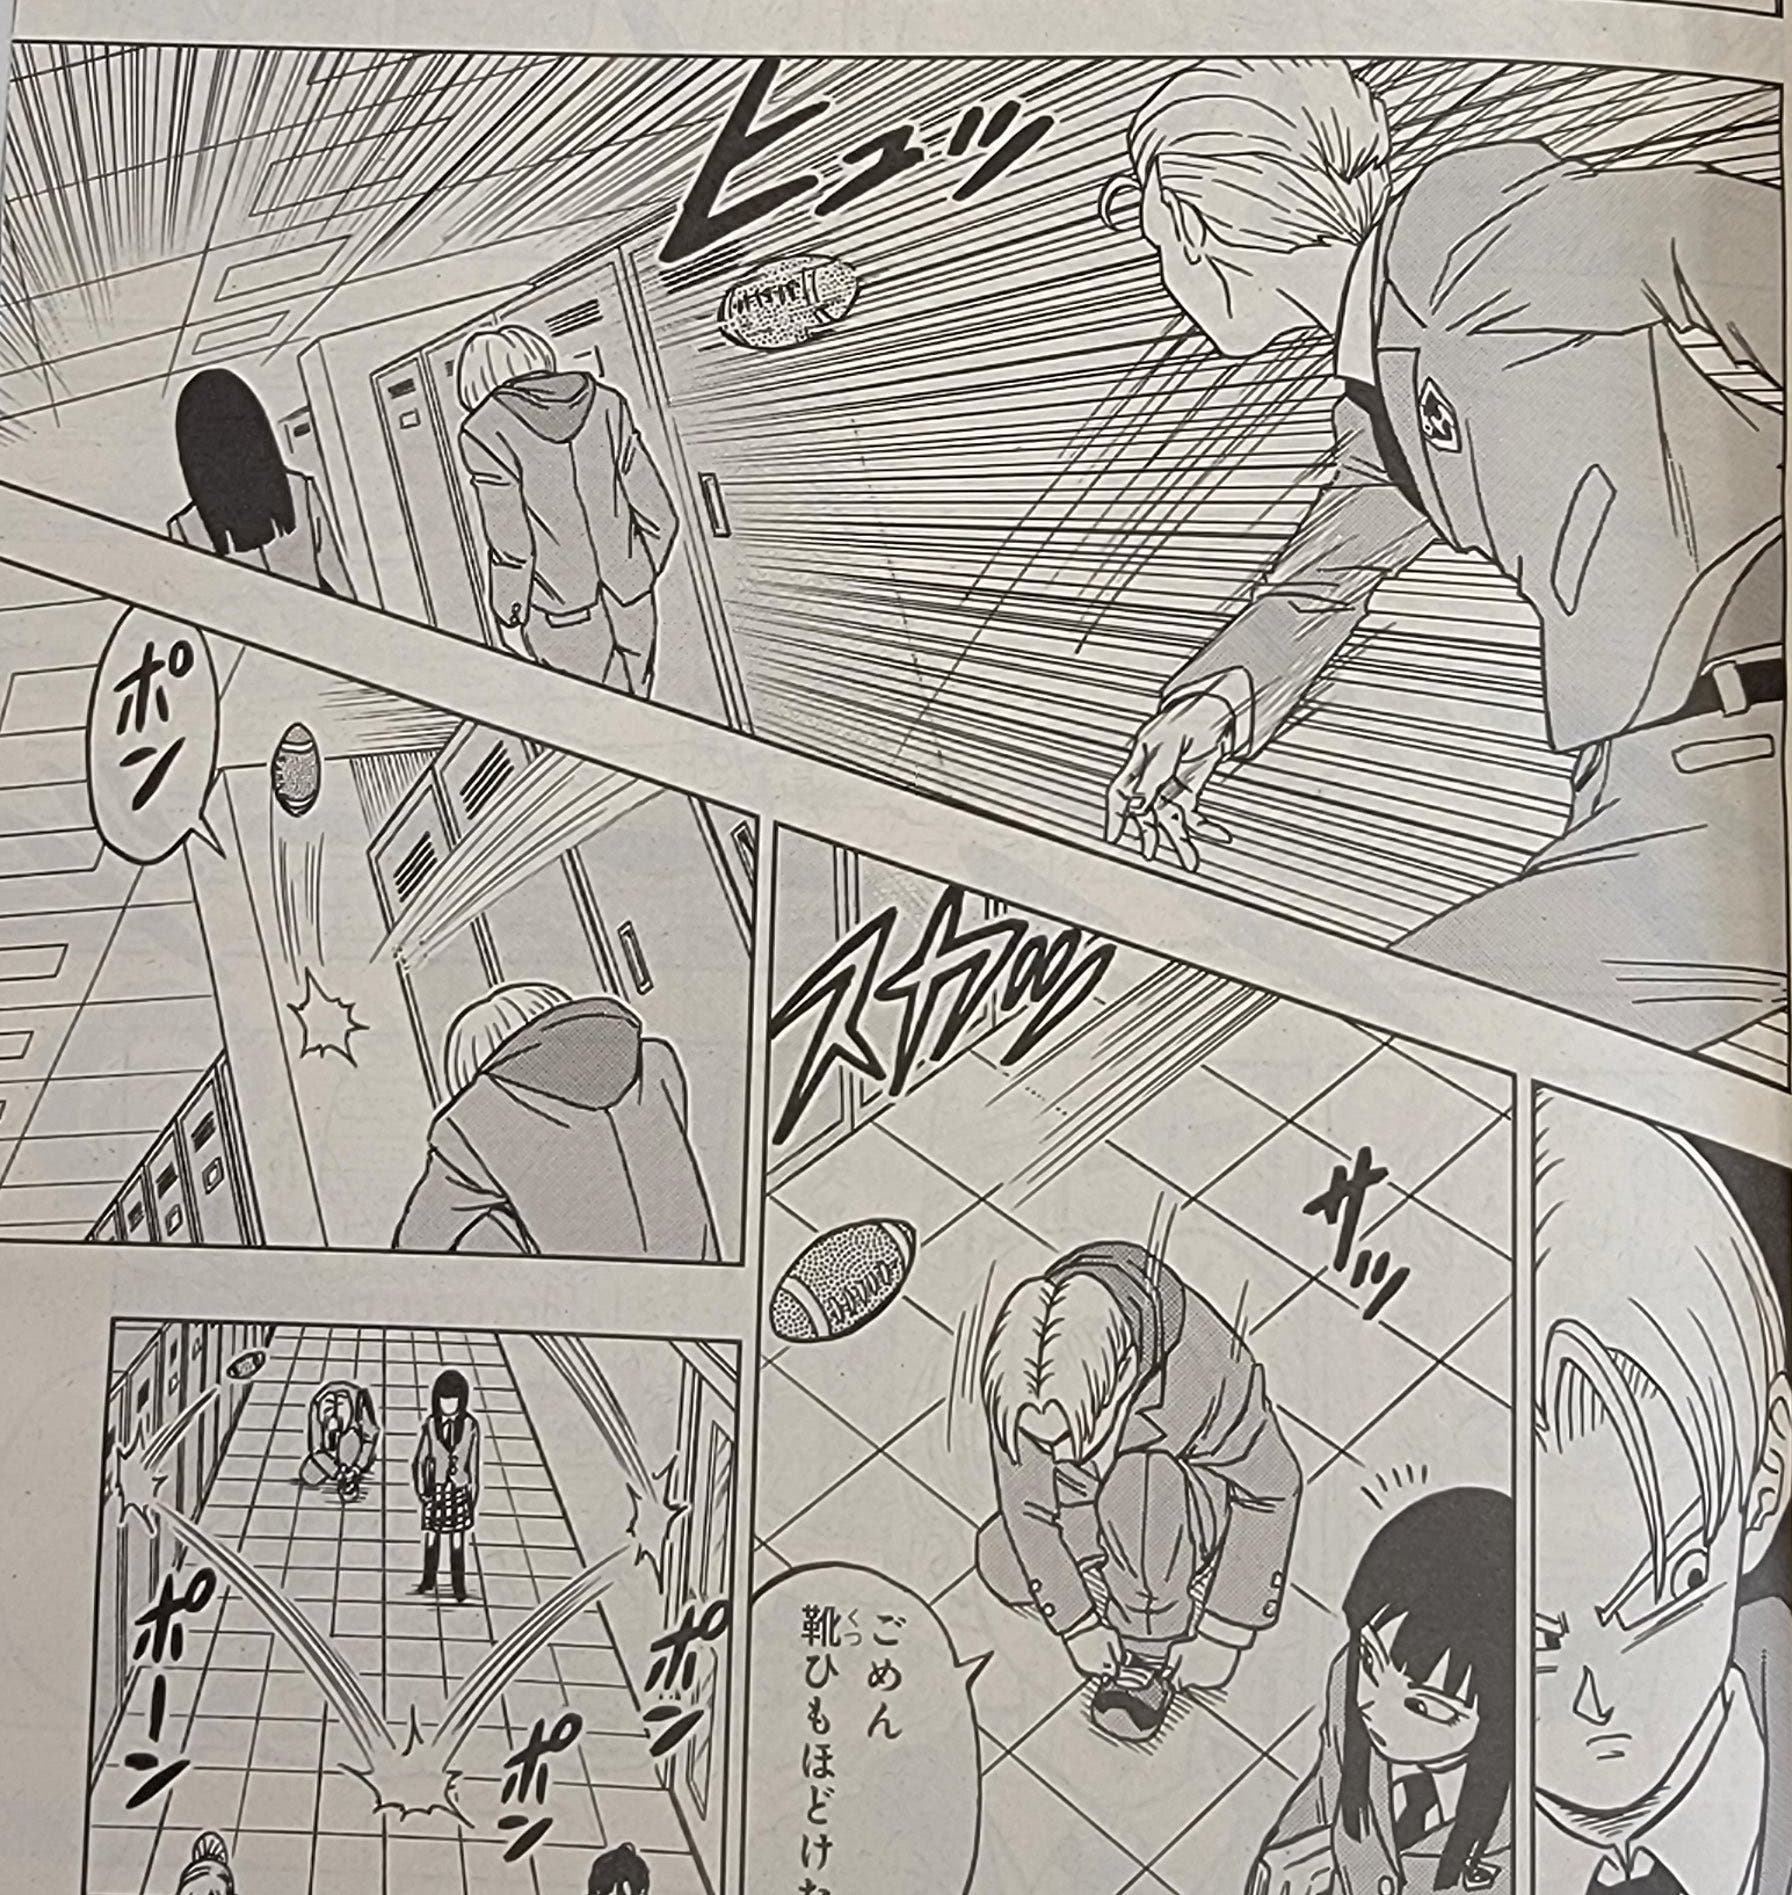 Dragon Ball Super: el capítulo 89 podría introducir a un nuevo androide  según teorías, Dragon Ball, Anime, Manga, México, DEPOR-PLAY